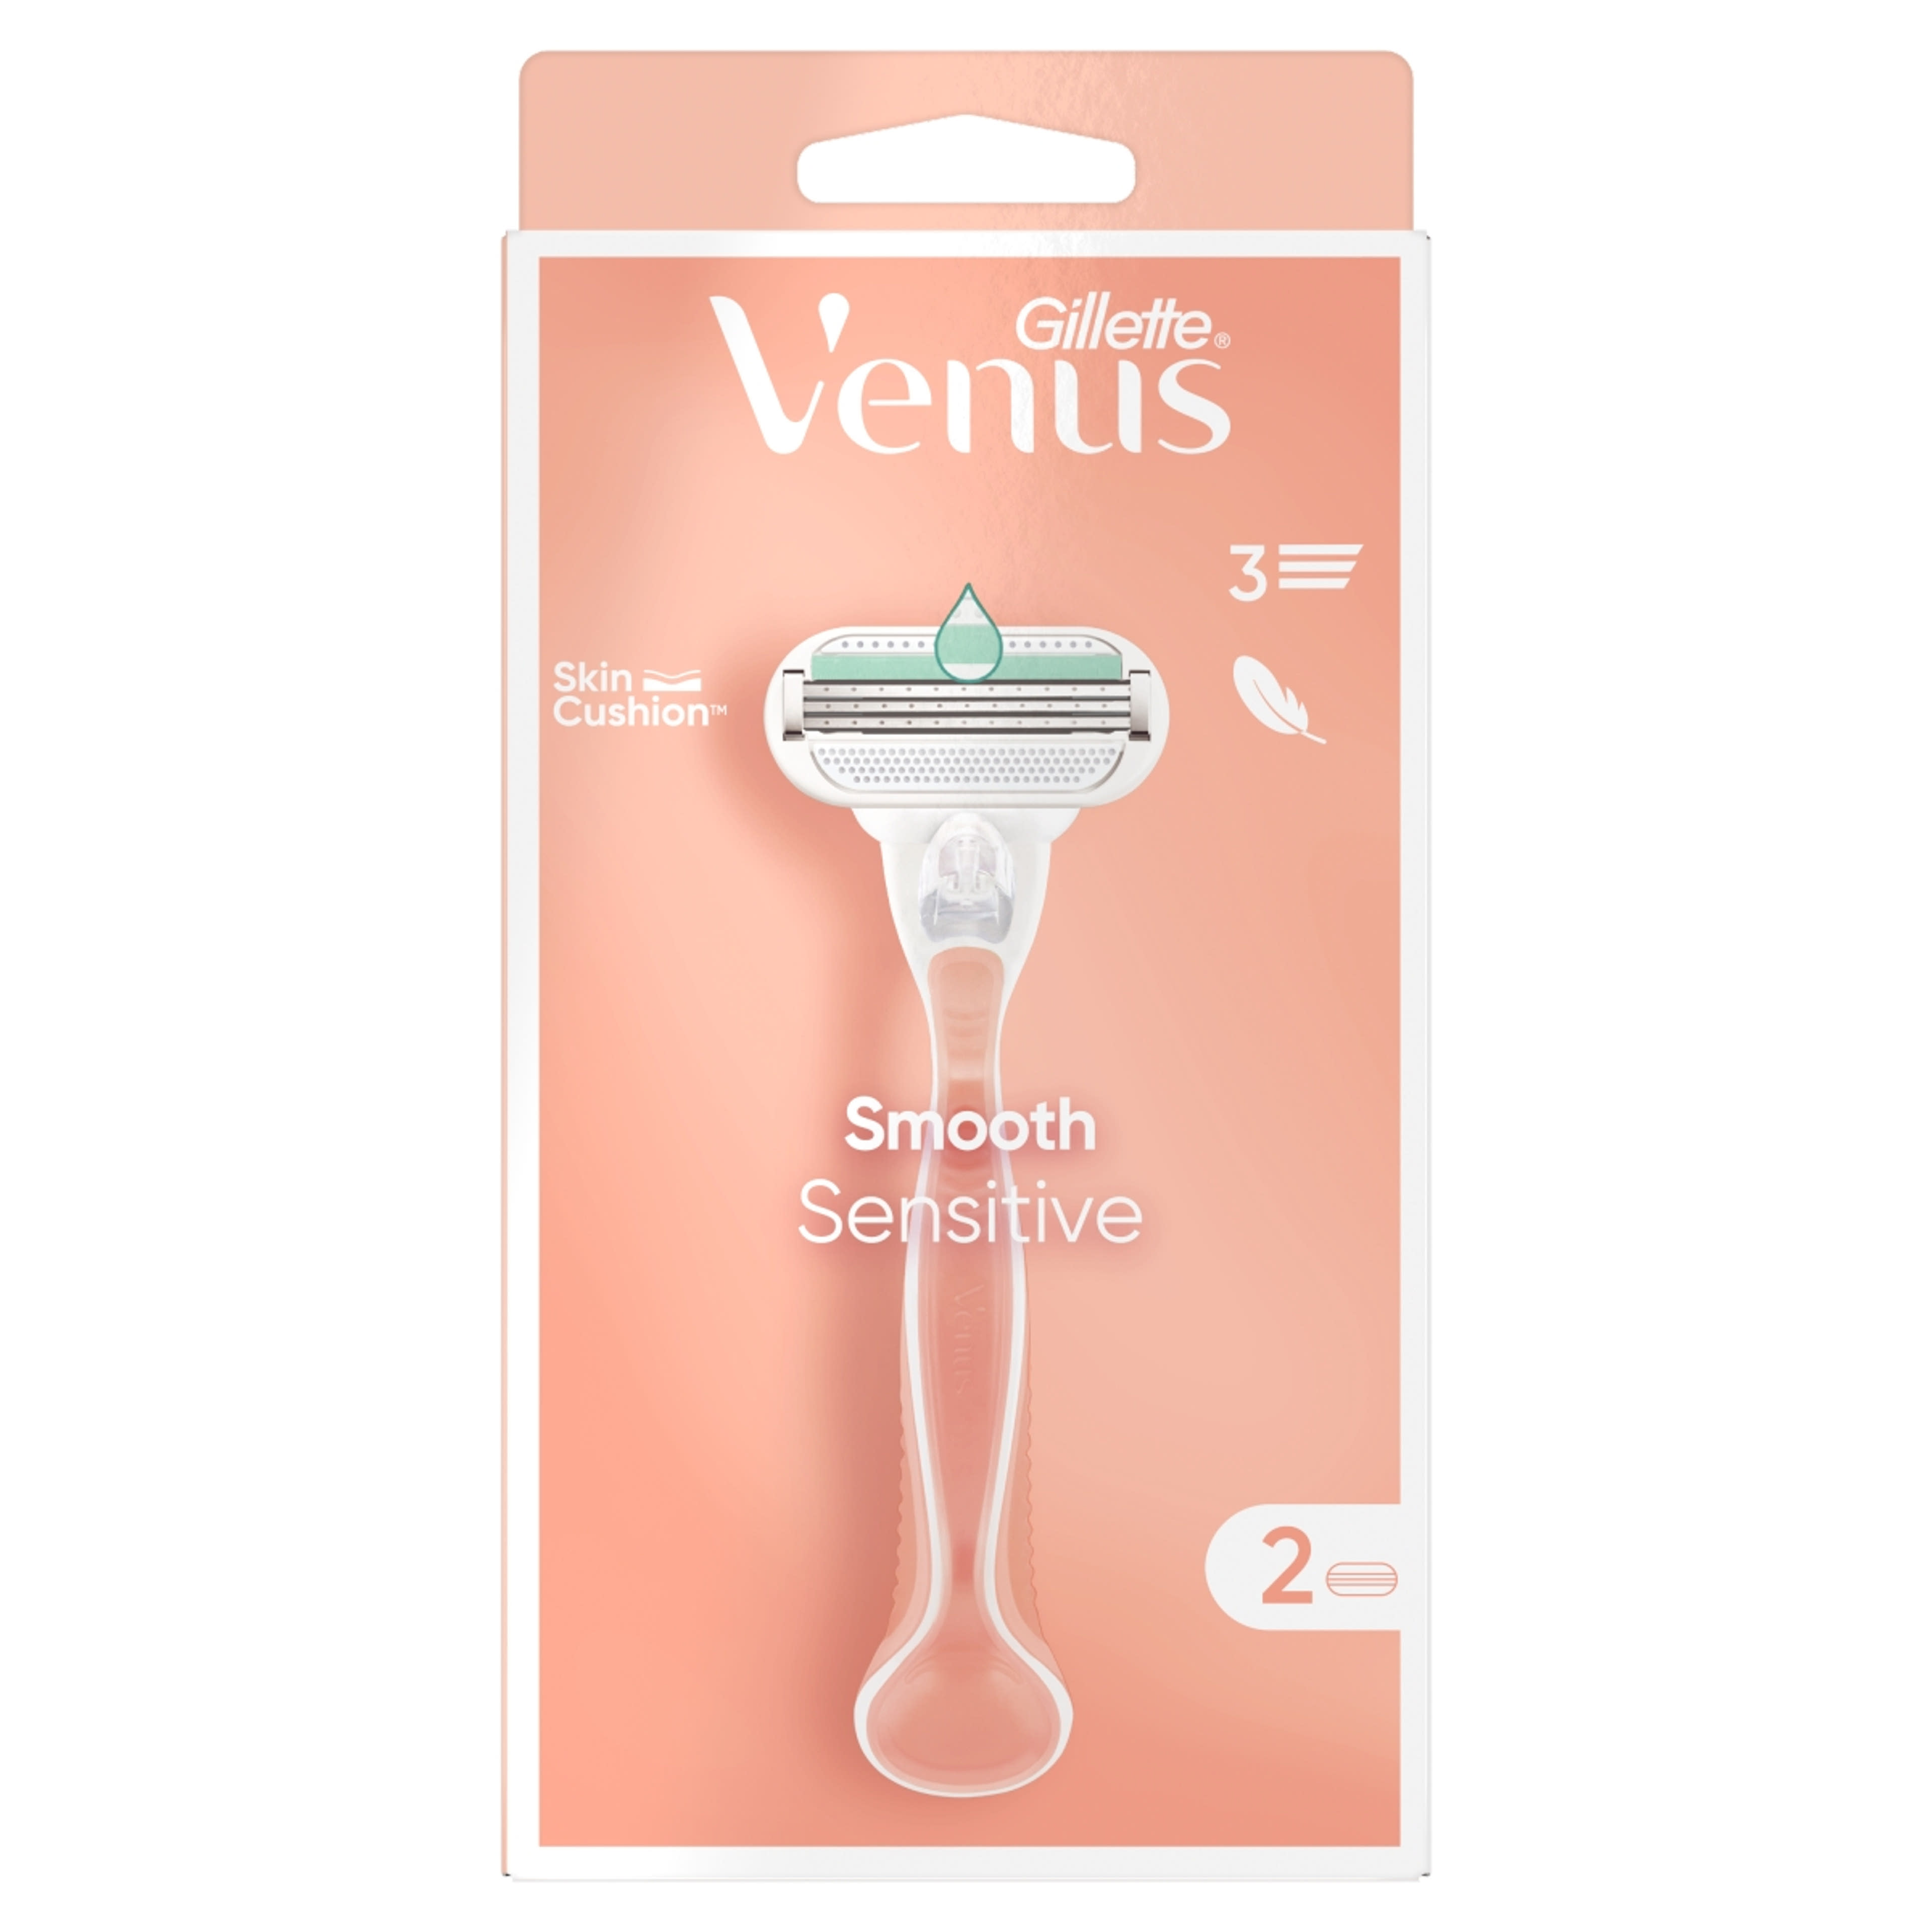 Gillette Venus Smooth Sensitive borotvakészülék 3 pengés + 2 borotvabetét - 1 db